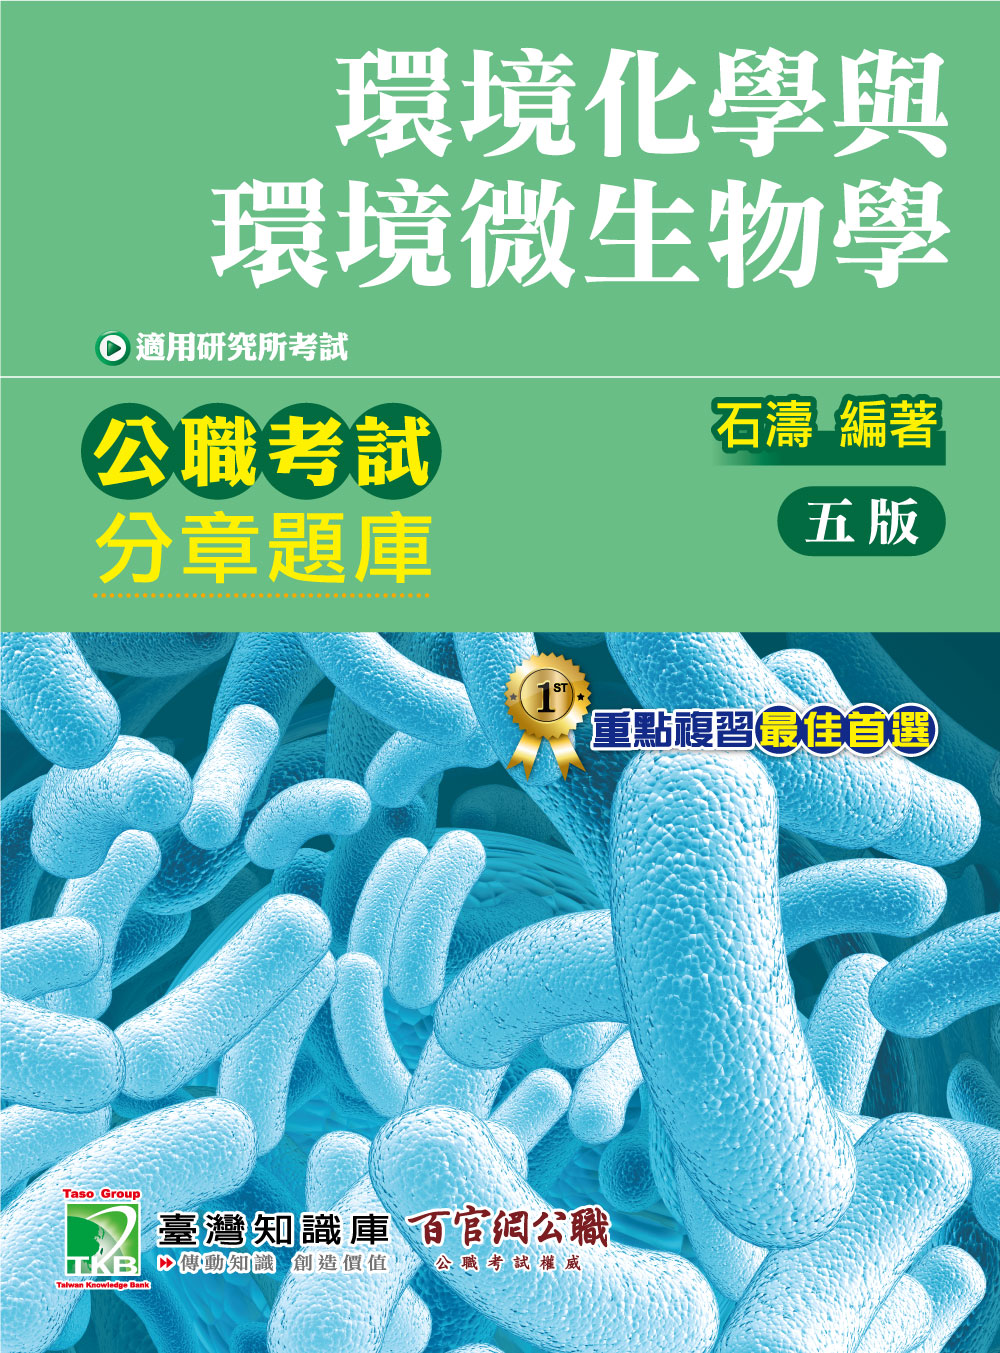 公職考試分章題庫【環境化學與環境微生物學】(CF5101)